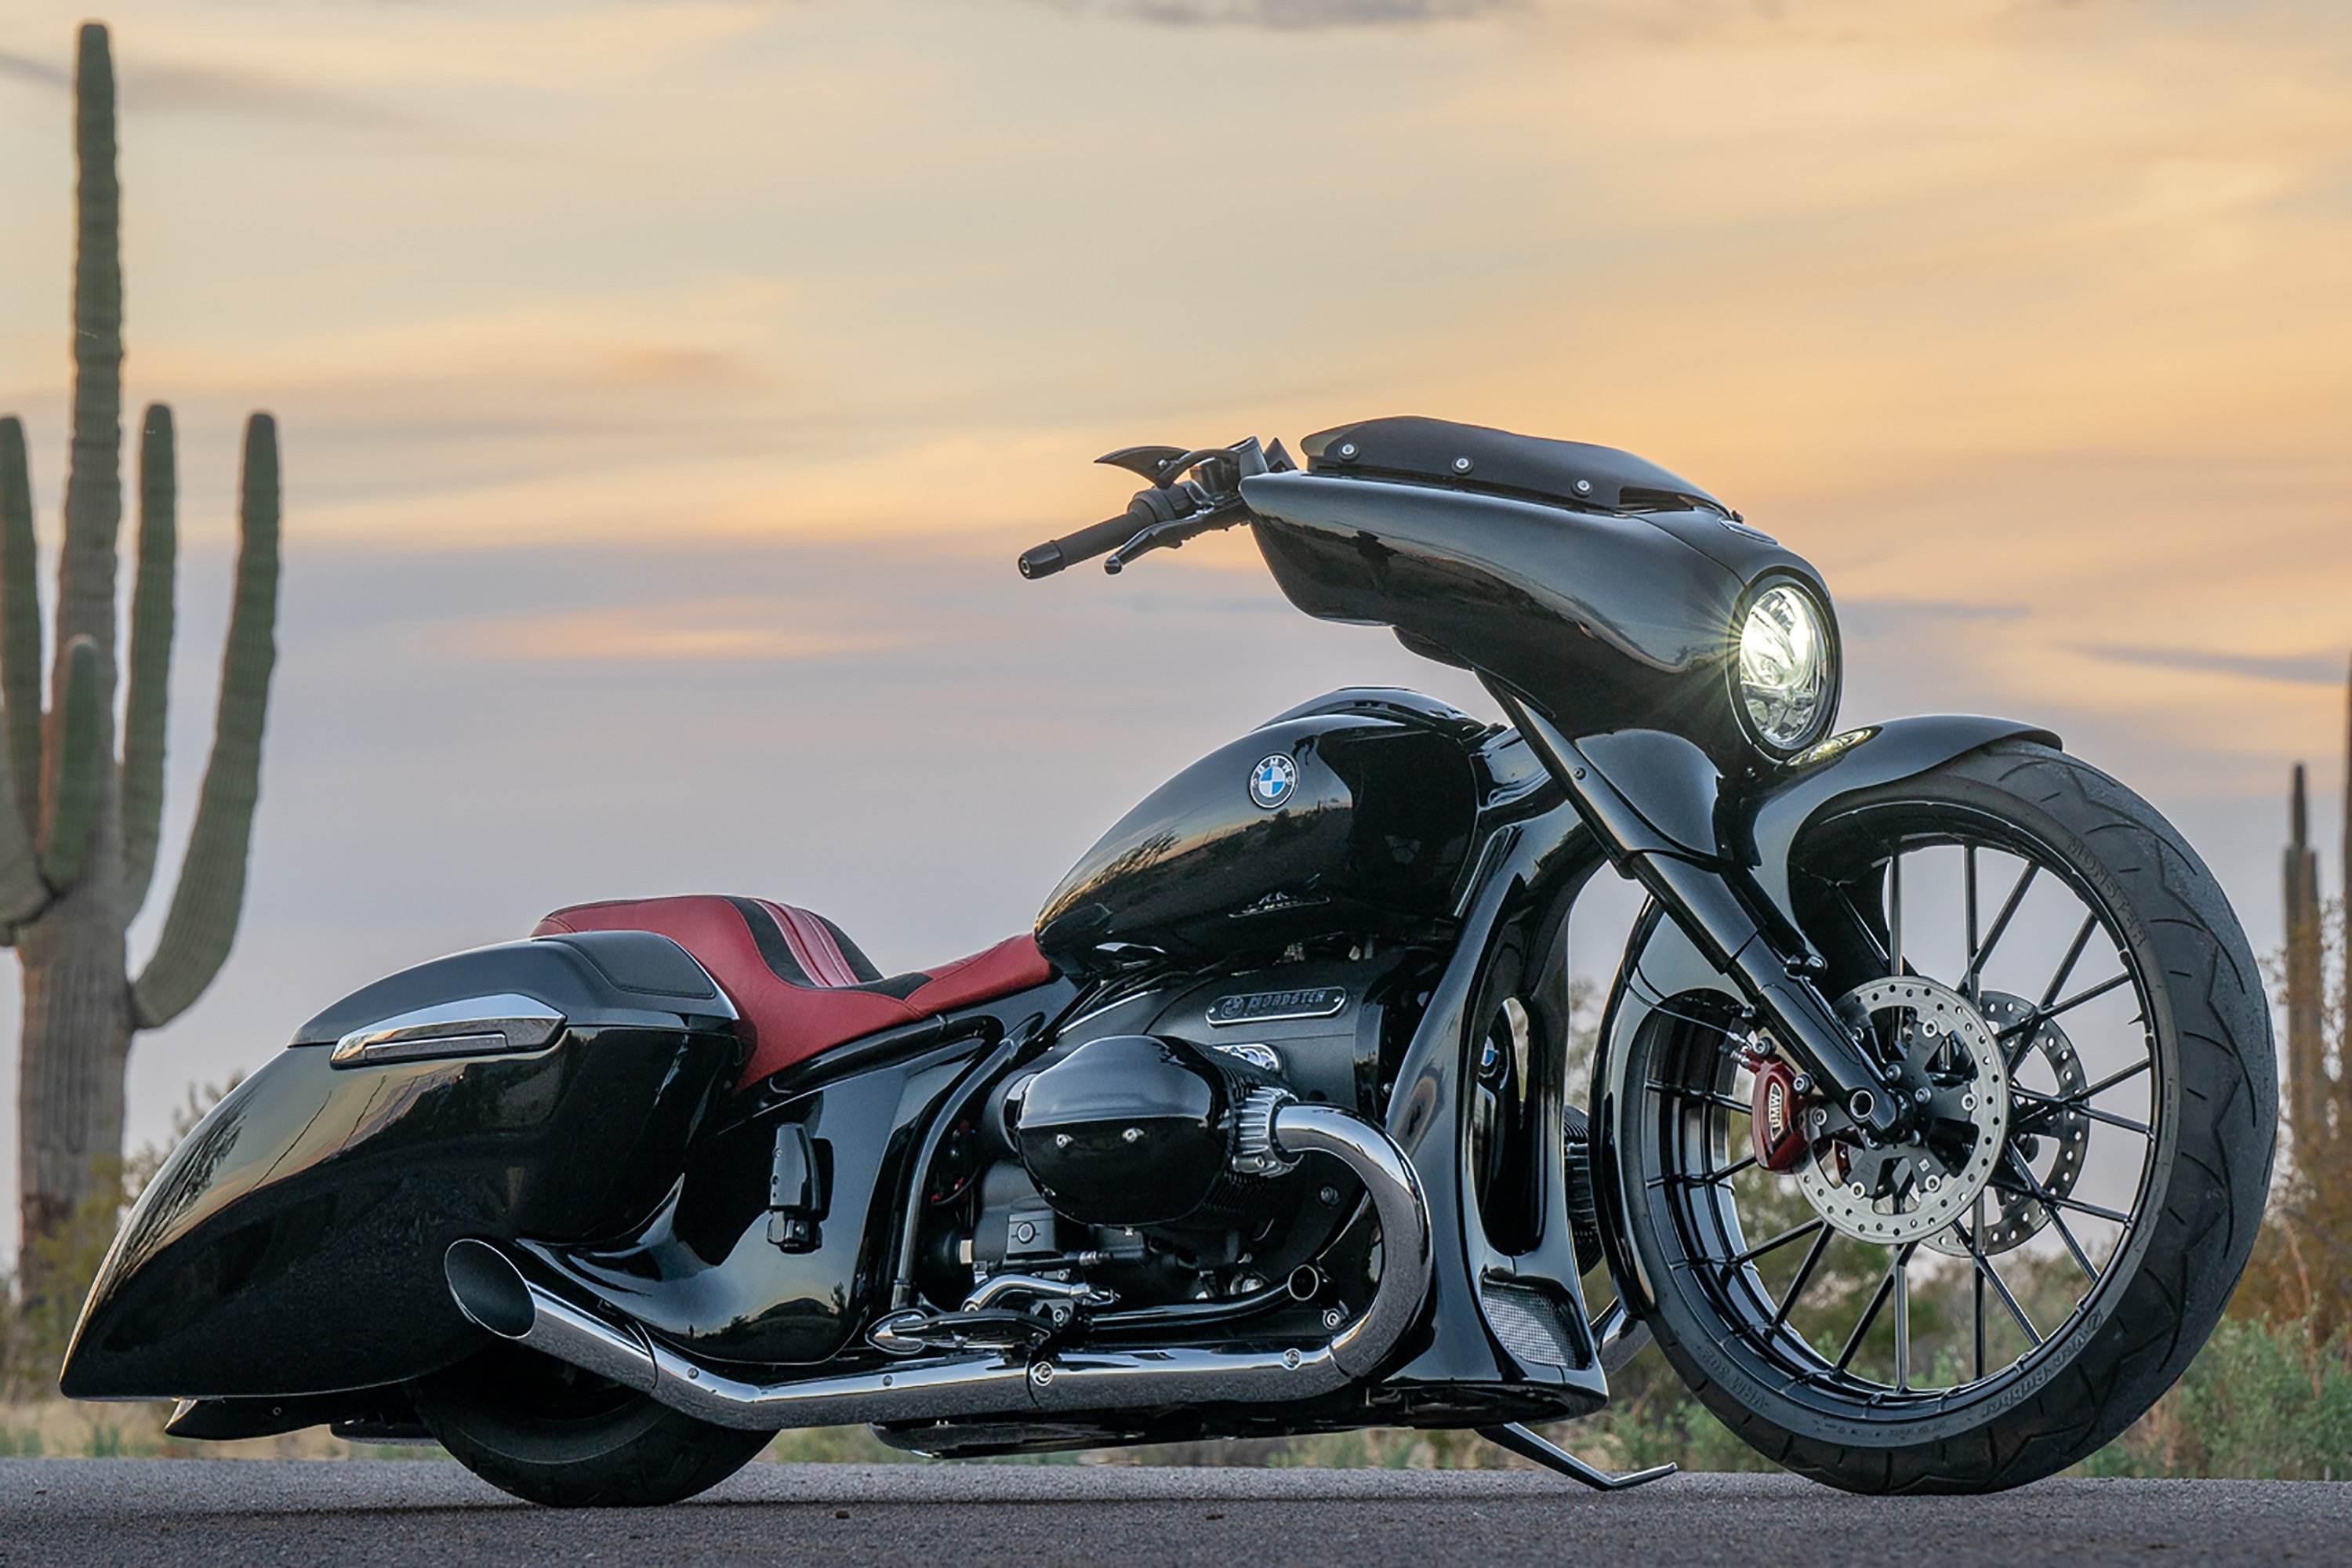 O modelo combina a estética clássica dos automóveis “hot rod” com a essência distintiva das motocicletas da marca alemã